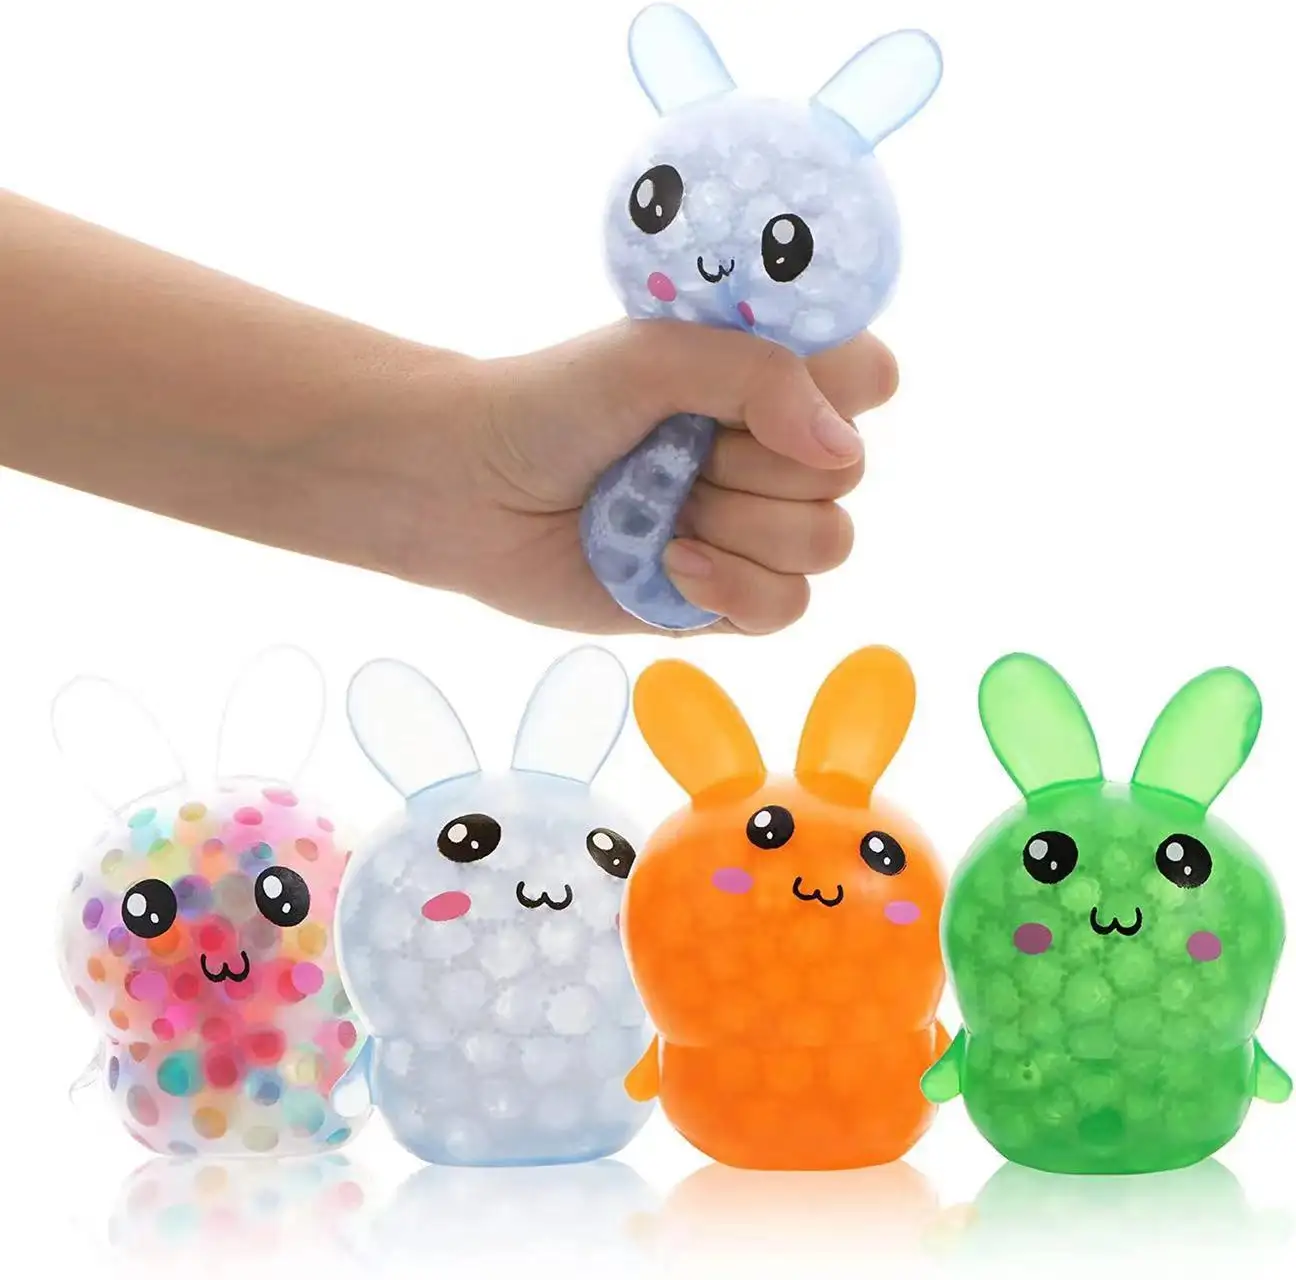 Großhandel Hase Squishy Wasser Perlen Anti Stress Ball TPR Kaninchen form Weiche Kinderspiel zeug 2022